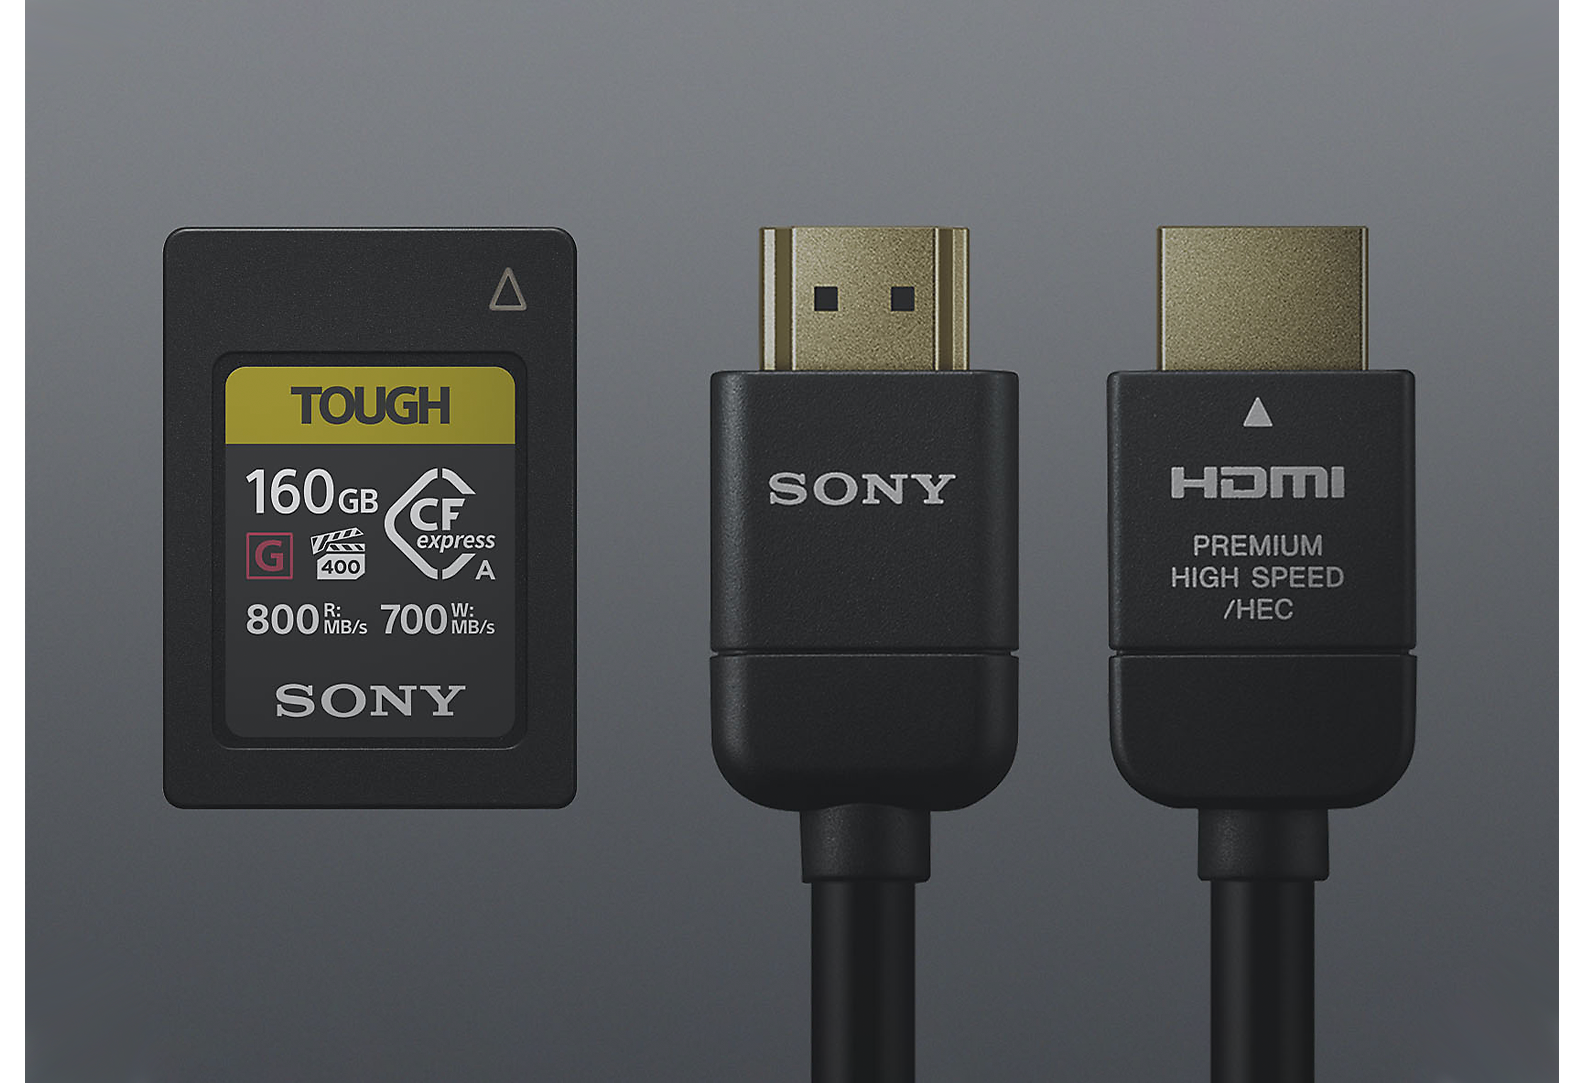 „Sony Tough SD“ kortelė ir du juodi „Sony“ laidai pilkame fone